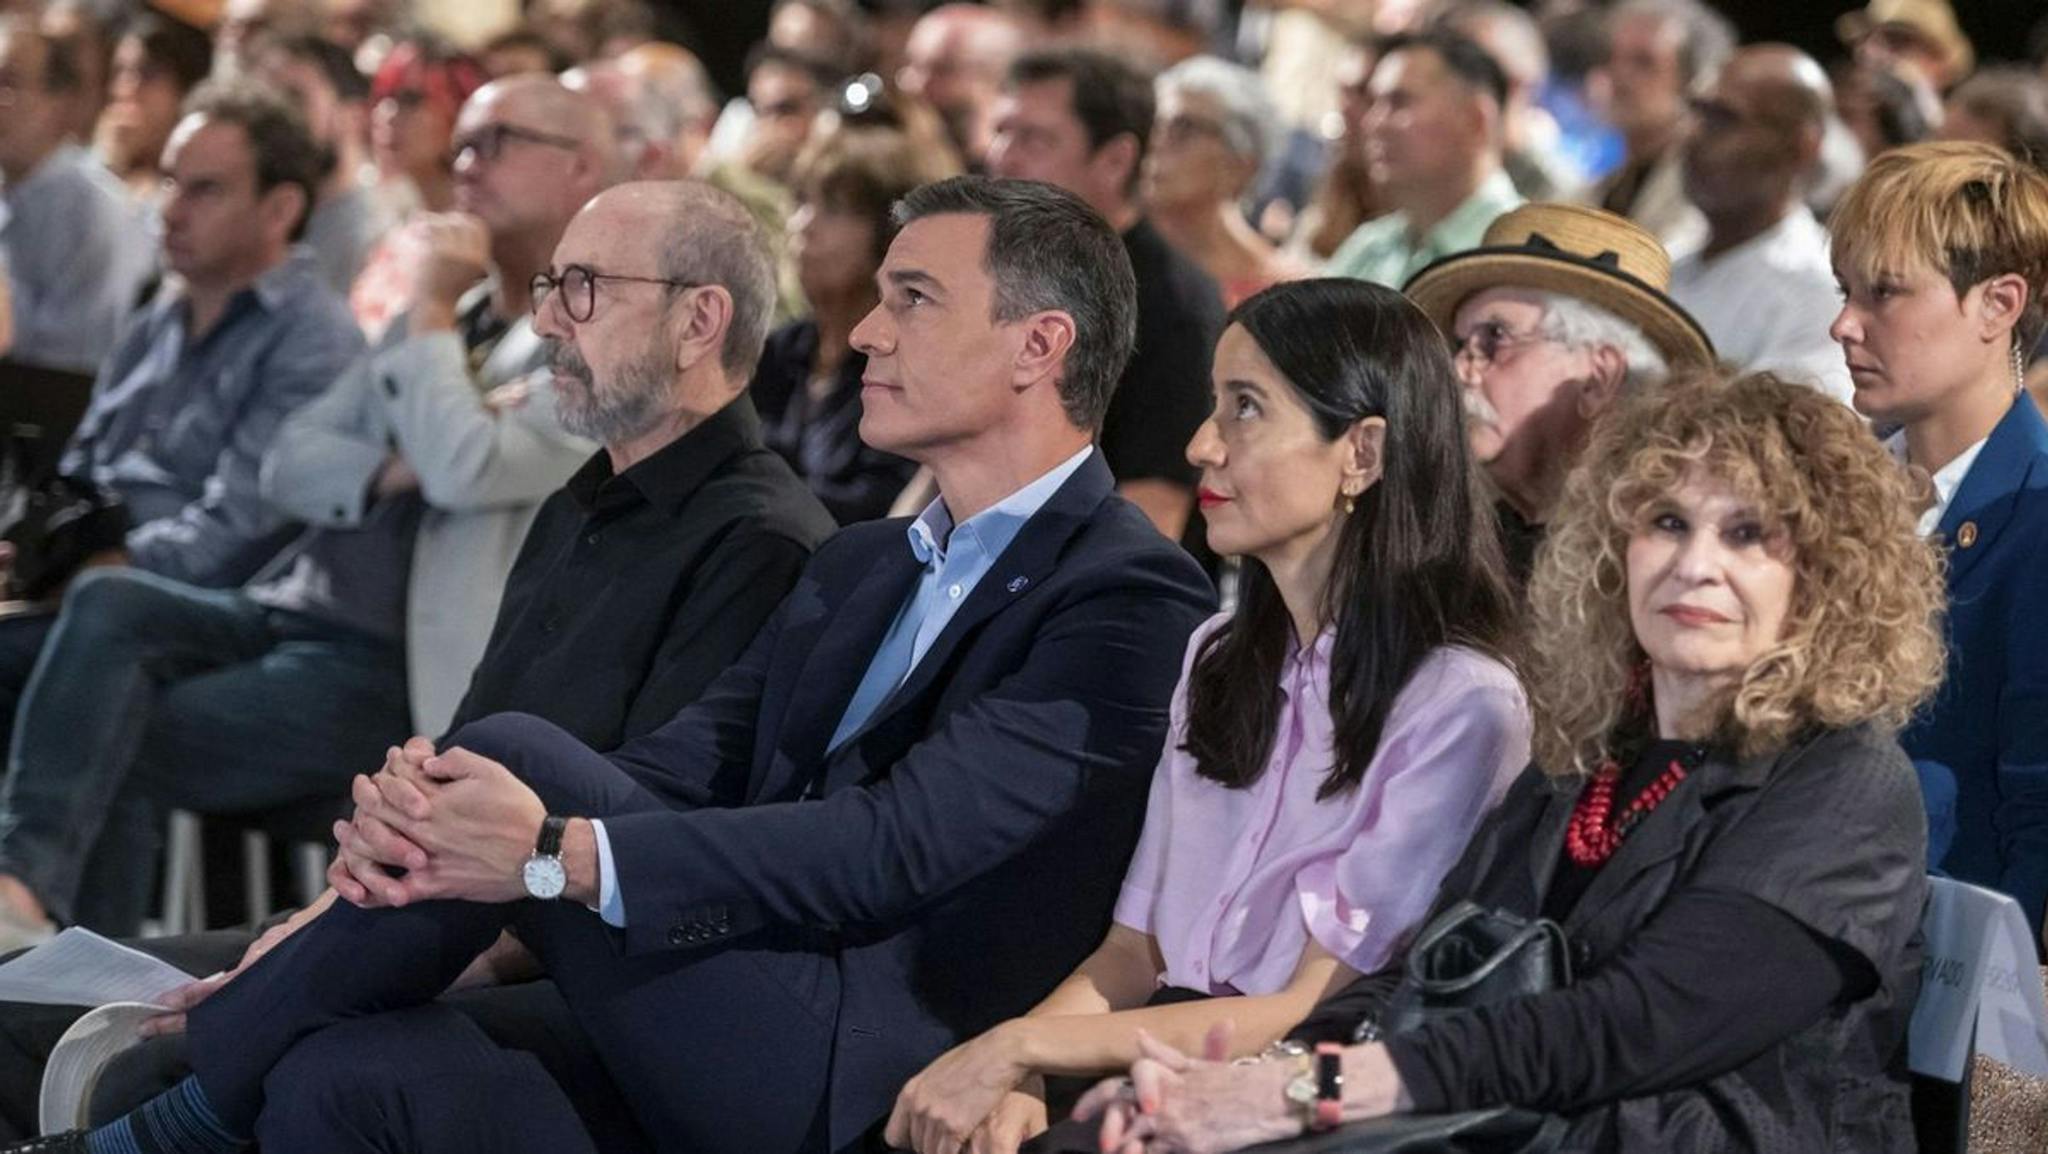 El presidente del Gobierno, Pedro Sánchez, asiste junto a Miguel Rellán al acto del Círculo de Bellas Artes